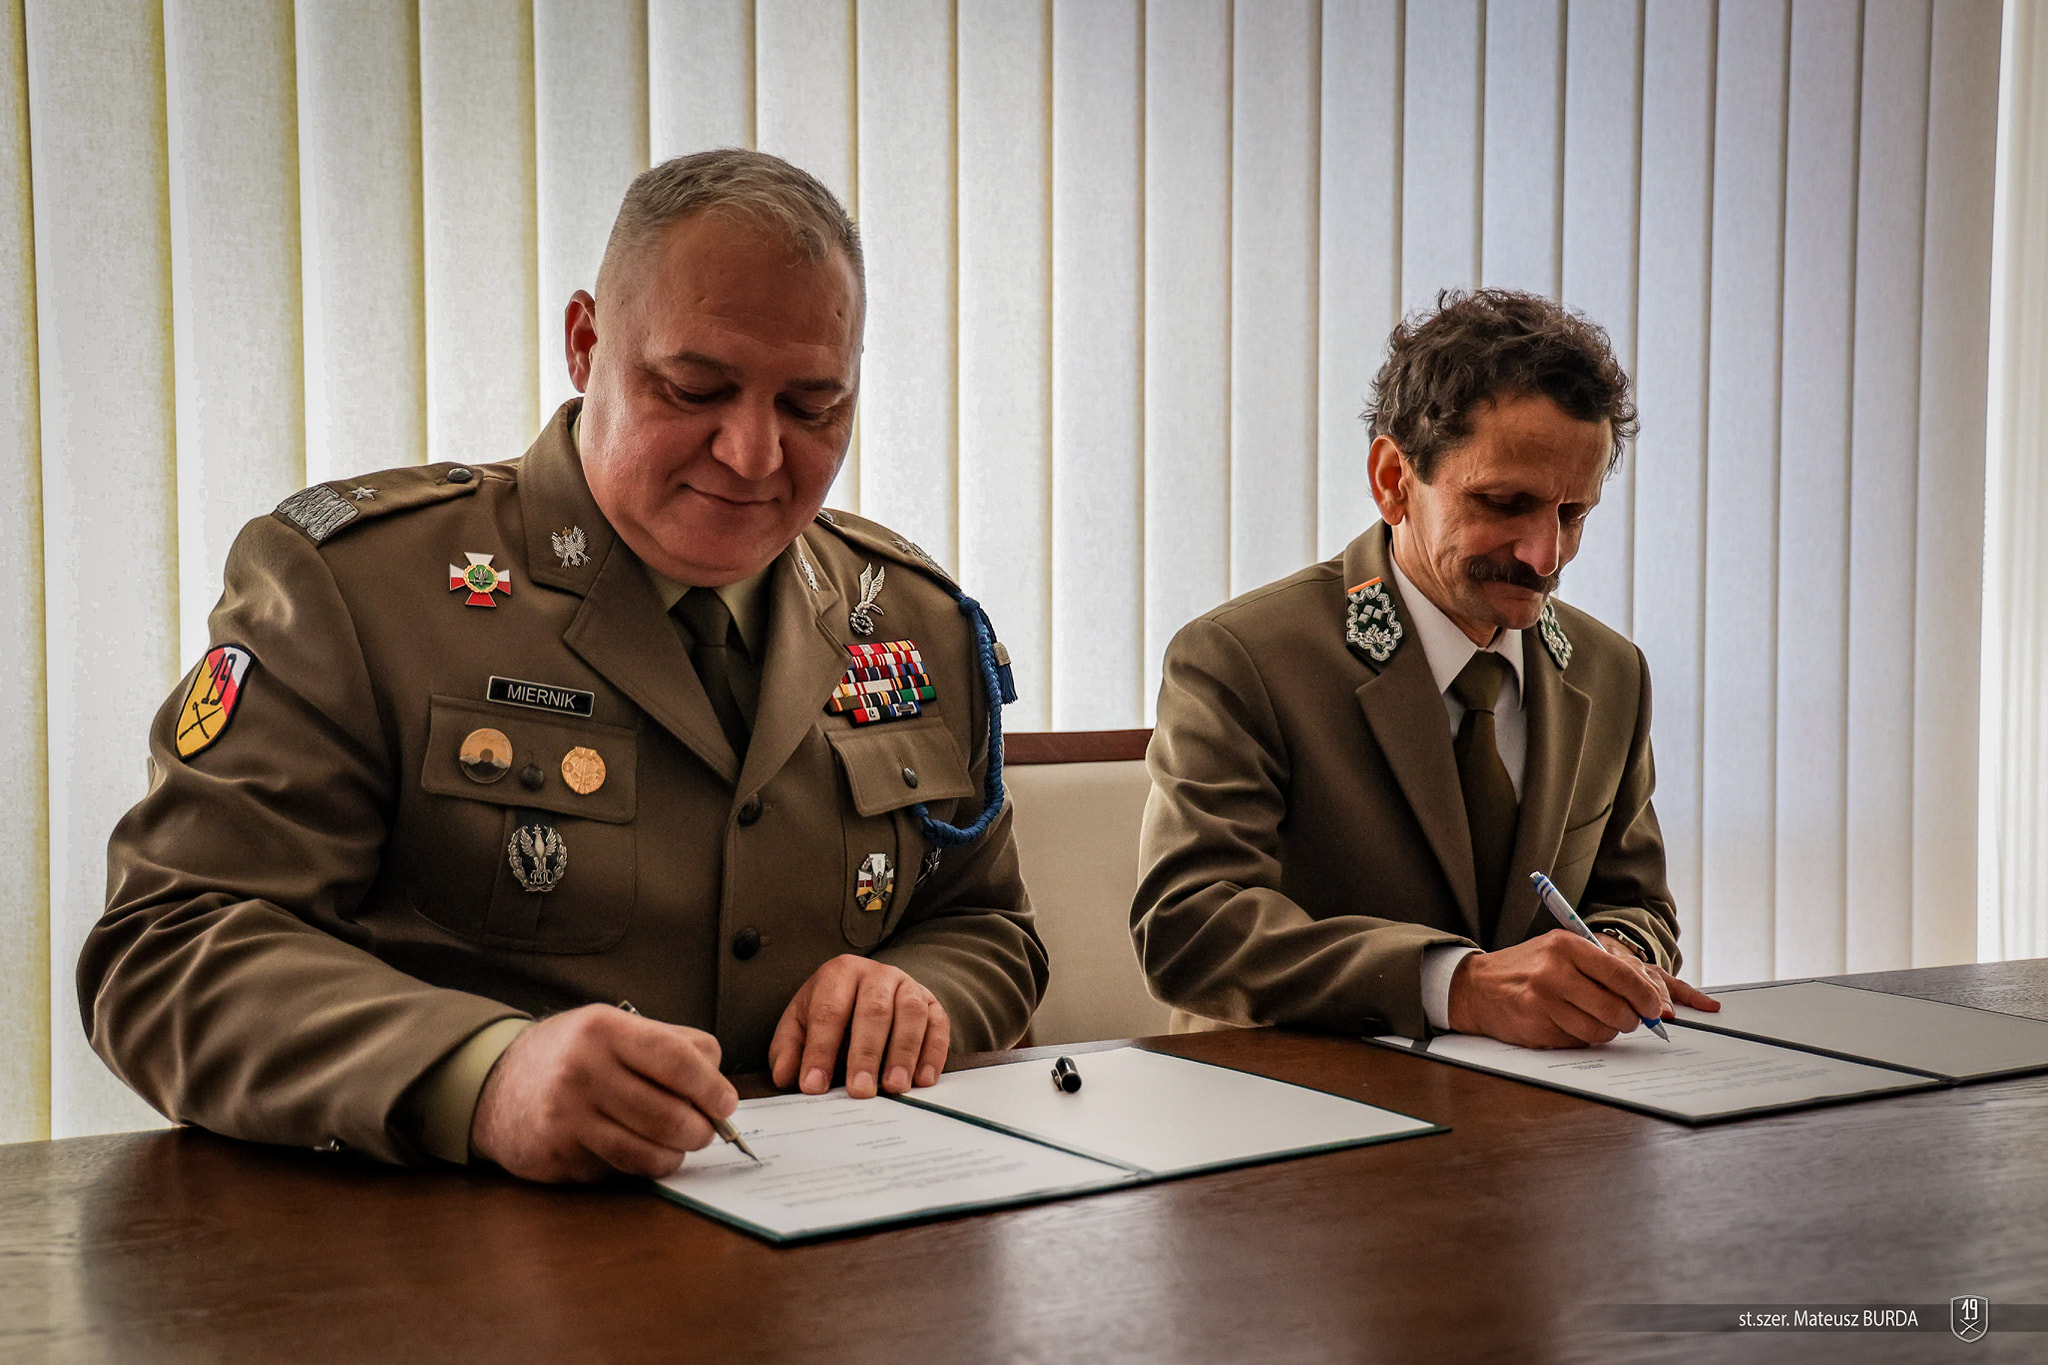 Żołnierze i leśnicy będą prowadzić wspólną działalność szkoleniową. Podpisano porozumienie (zdjęcia)